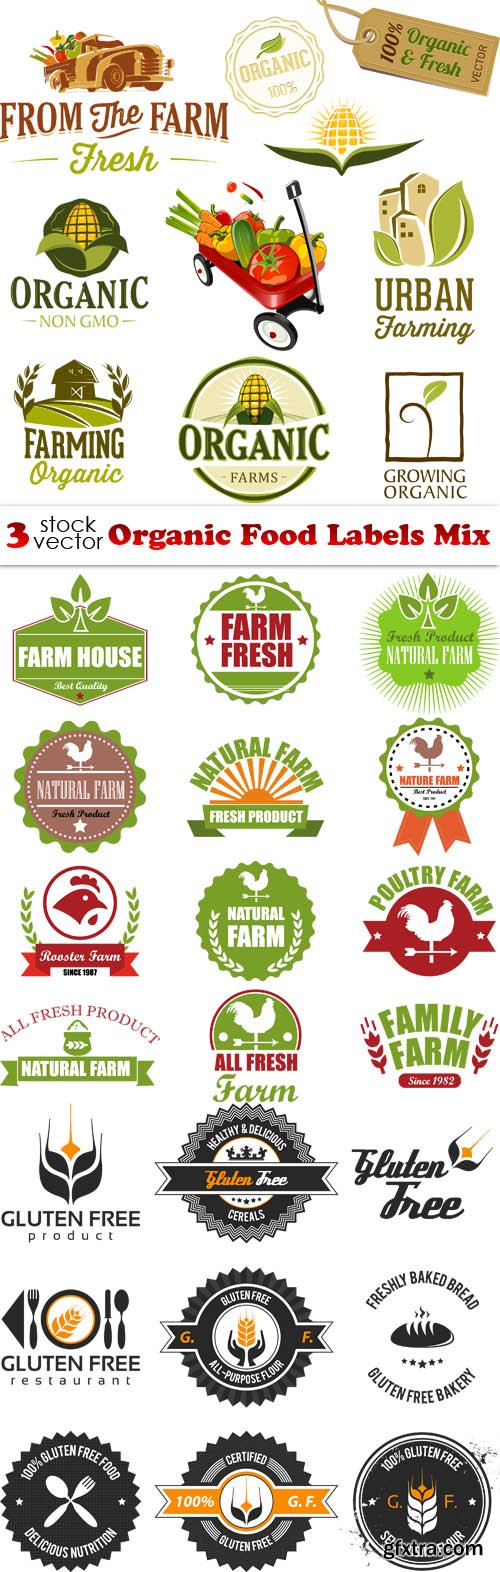 Vectors - Organic Food Labels Mix